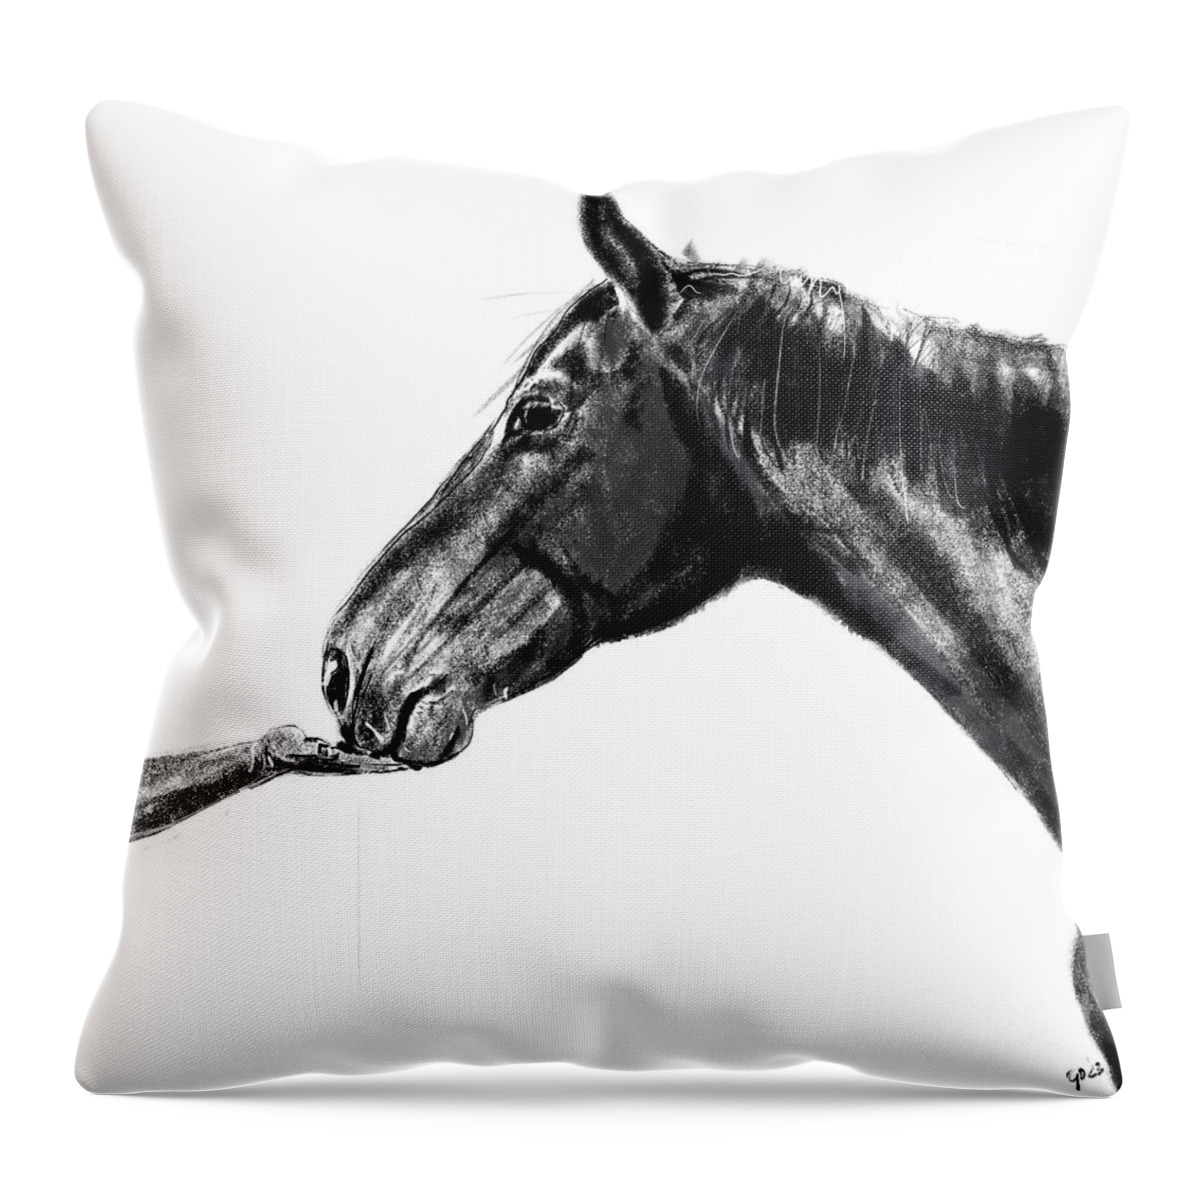 Horse Max By Go Van Kampen Throw Pillow featuring the painting Horse Max by Go Van Kampen